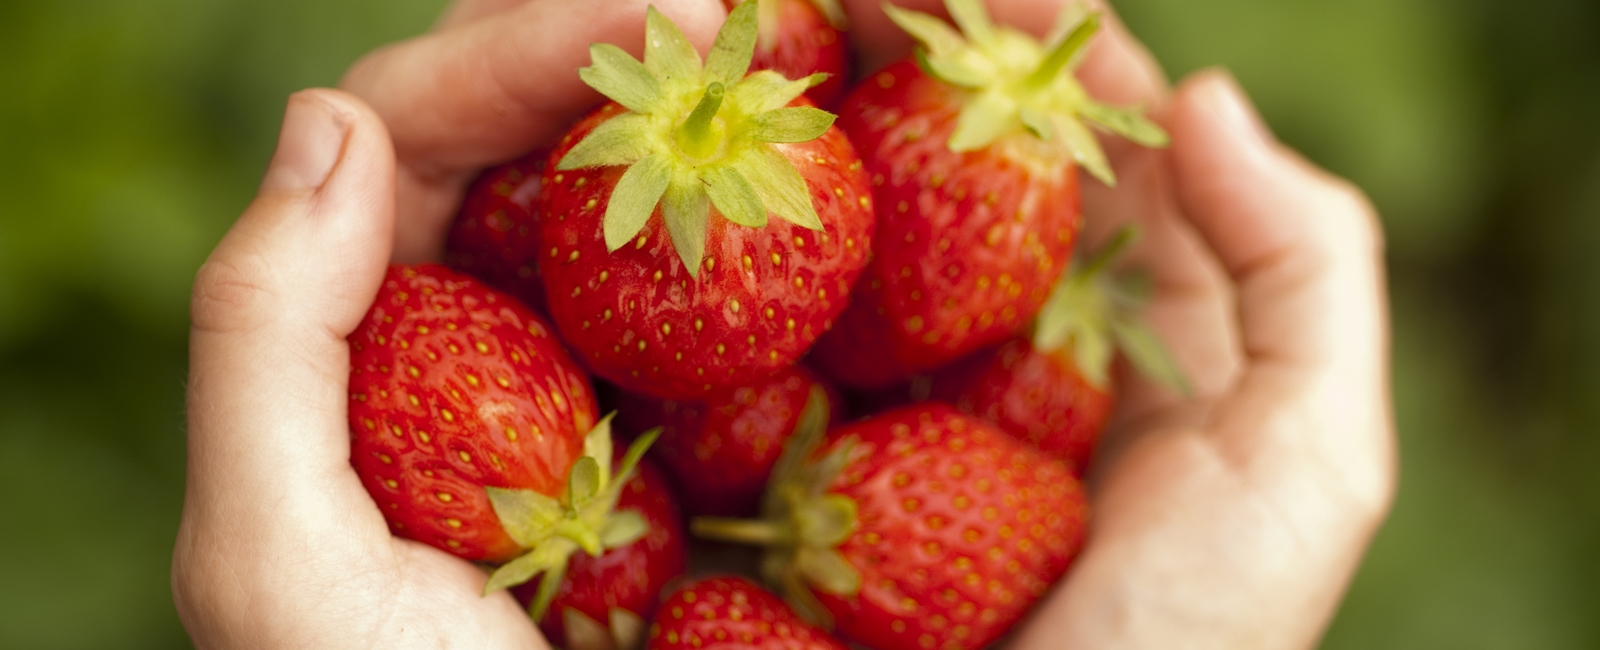 딸기의 영양소 결핍 현상에 대한 정보를 찾고 계십니까? 아니면 딸기의 수확량과 품질을 증가시키기 위해 비료 프로그램에 도움이 필요합니까? 위 질문들에 대한 답을 딸기 영양에 대한 모든 측면에 대한 조언을 통해 구하세요.